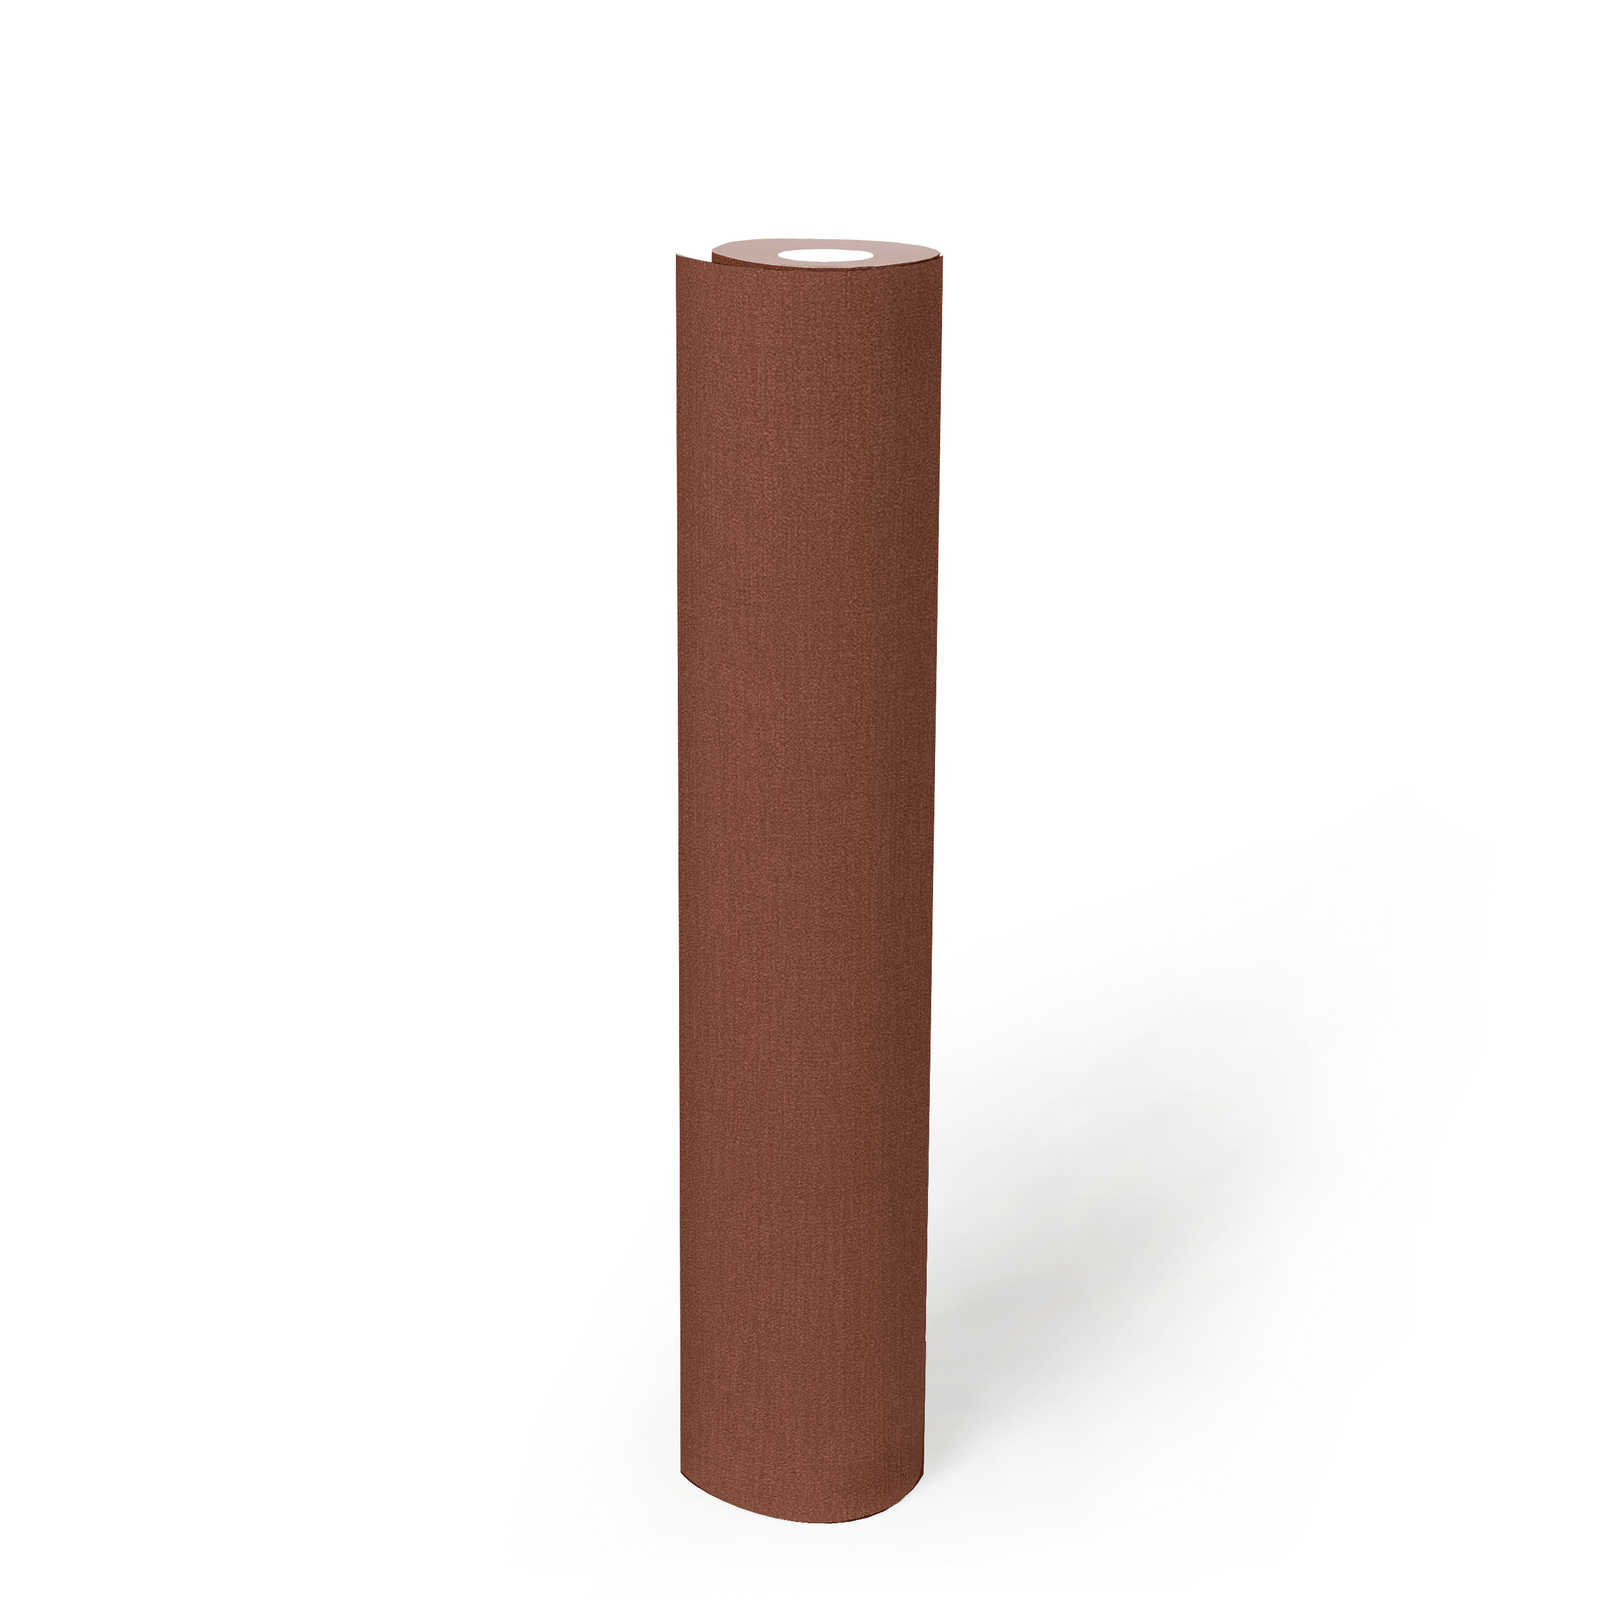             Papel pintado unitario en tonos oscuros - marrón rojizo
        